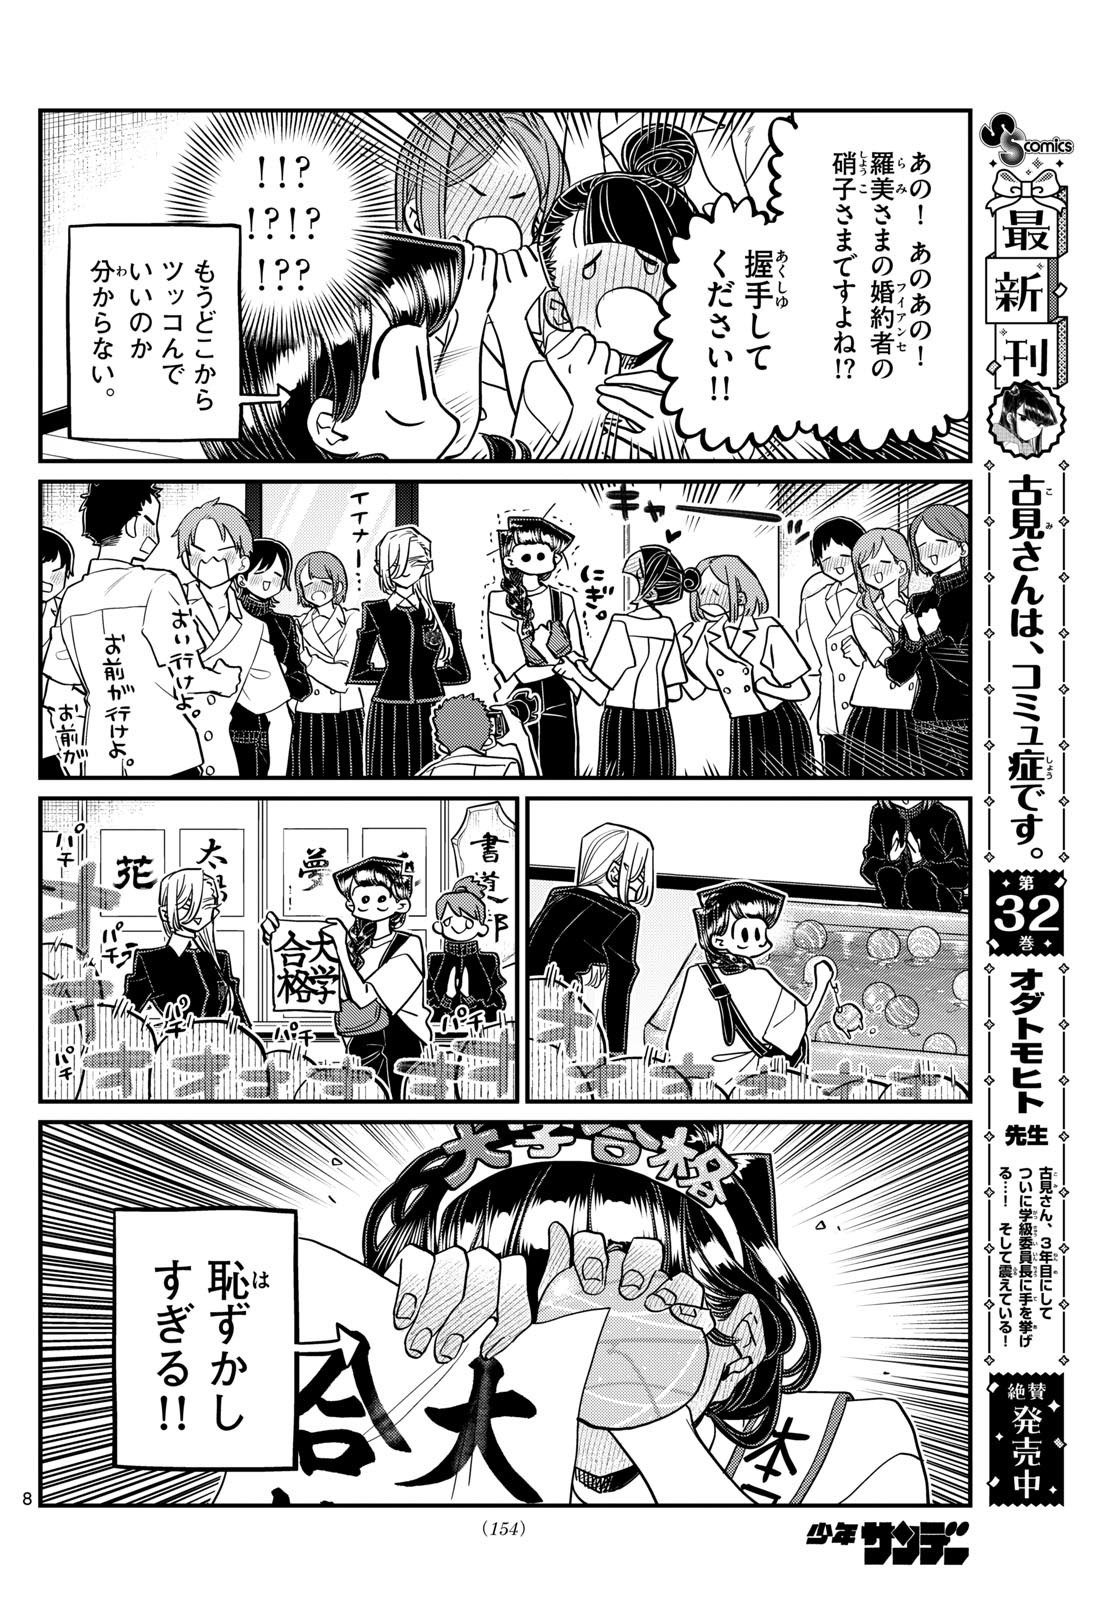 Komi-san wa Komyushou Desu - Chapter 446 - Page 8